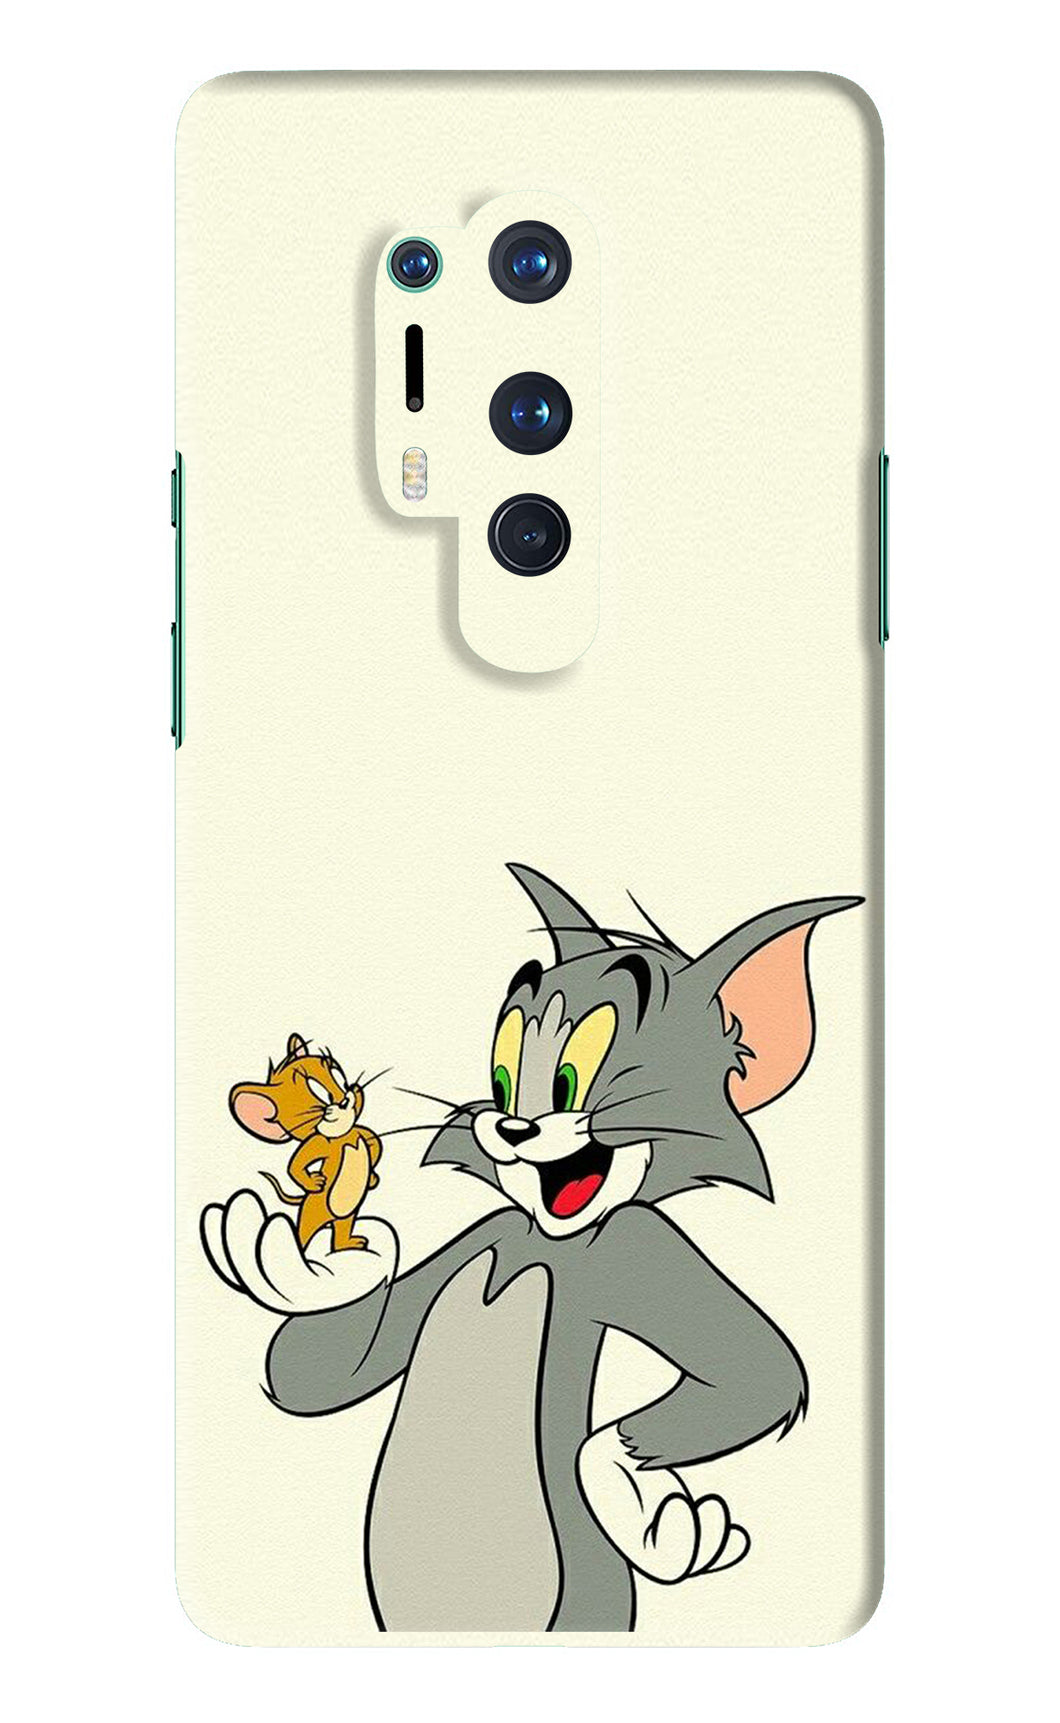 Tom & Jerry OnePlus 8 Pro Back Skin Wrap